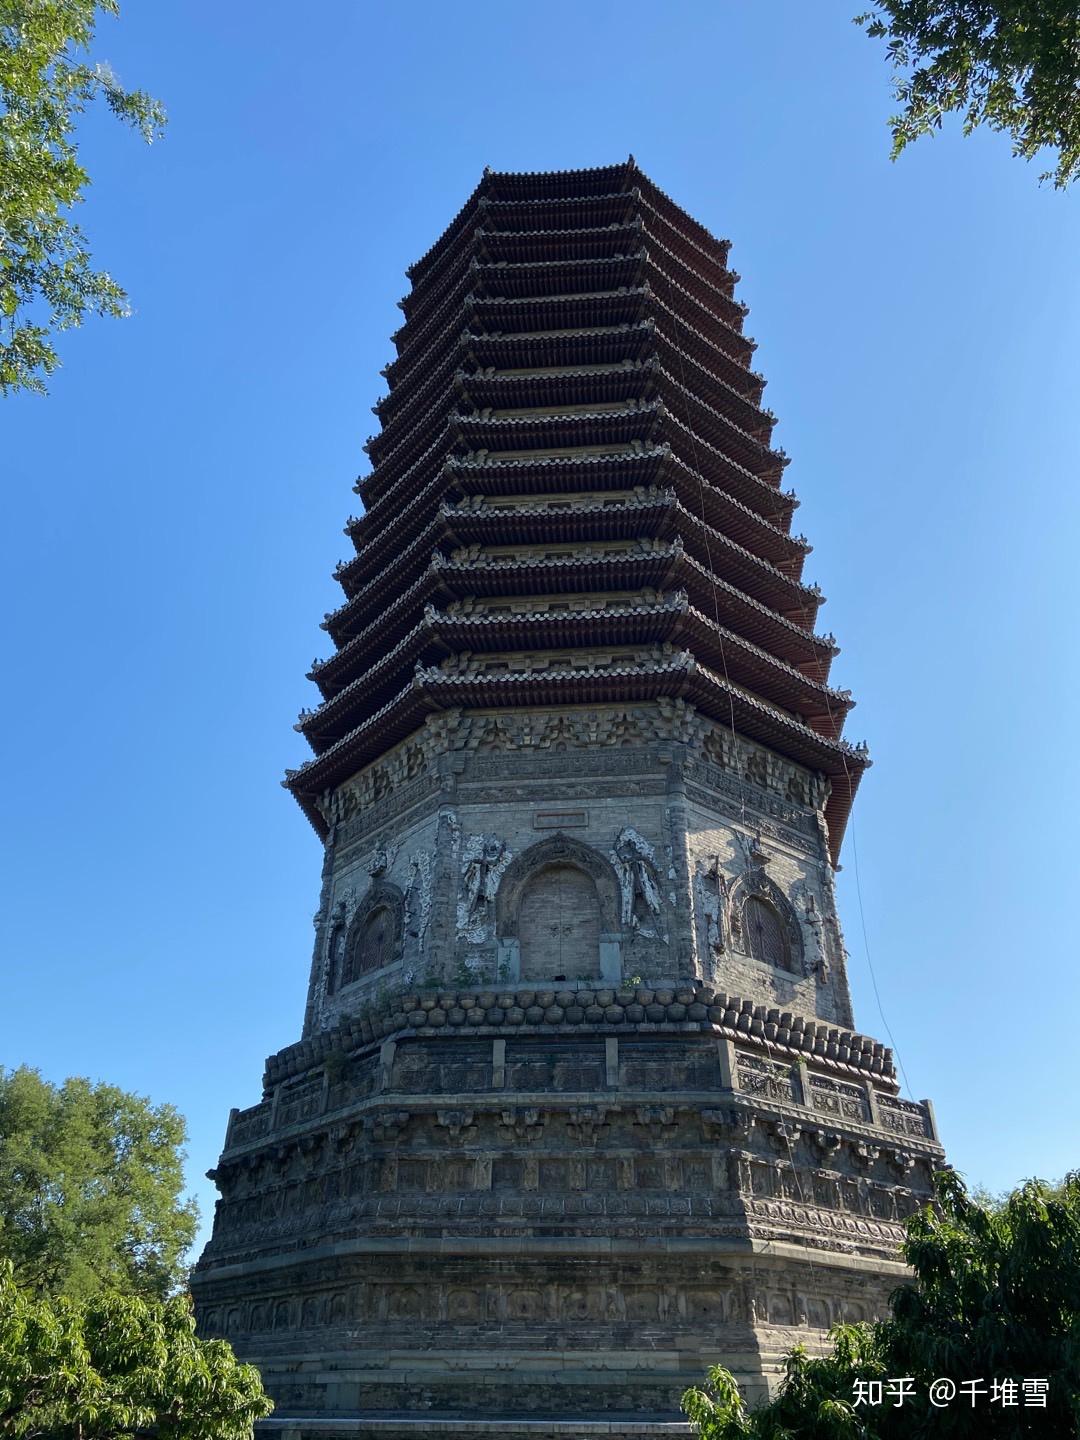 下午探寻了北京冷门古迹玲珑塔,又名慈寿寺塔,位于玲珑公园内,乃明